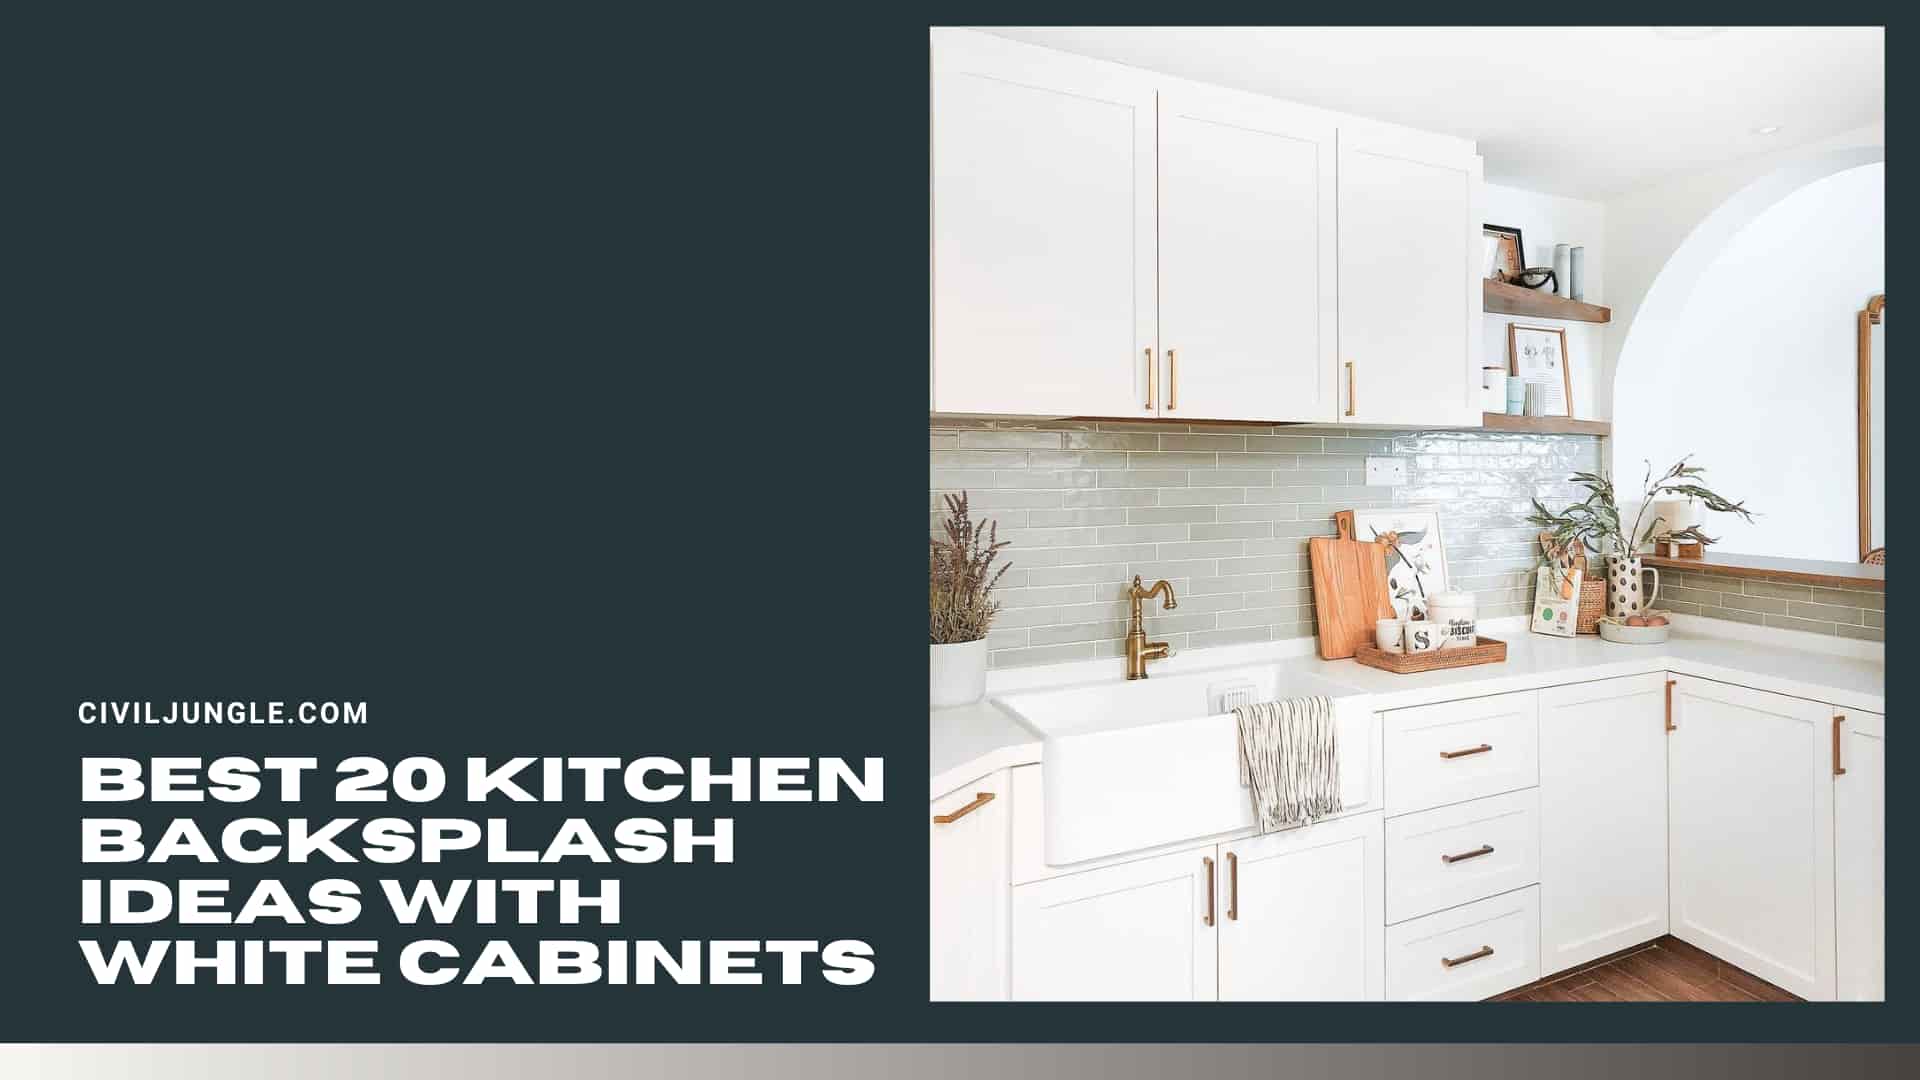 Best 20 Kitchen Backsplash Ideas with White Cabinets